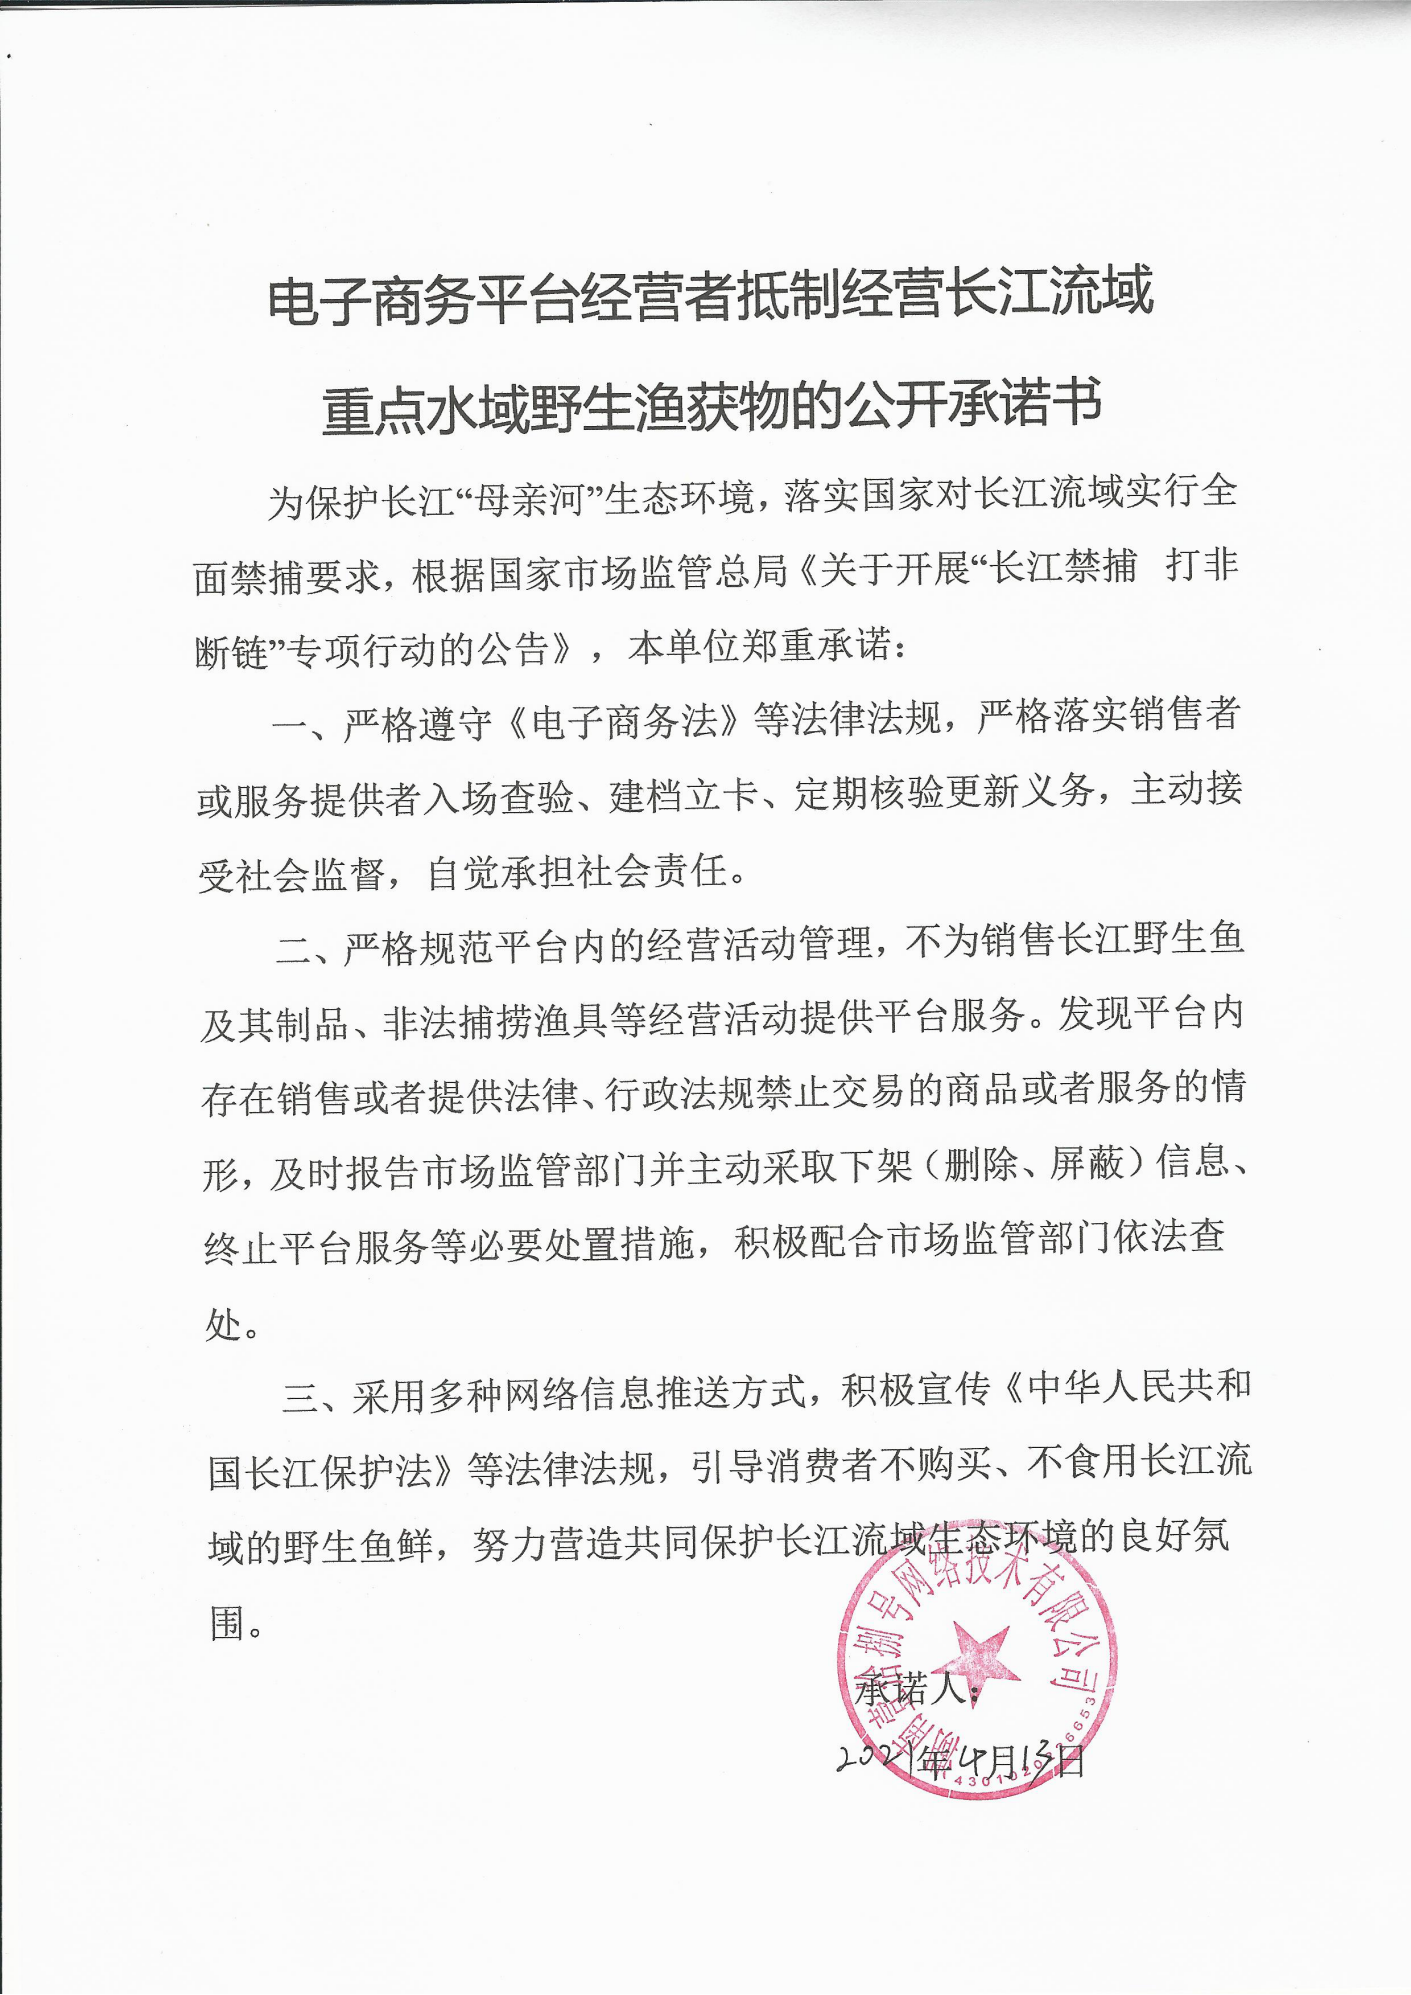 关于印发《关于推进长江十年禁渔“三承诺一倡议”活动实施方案》的通知